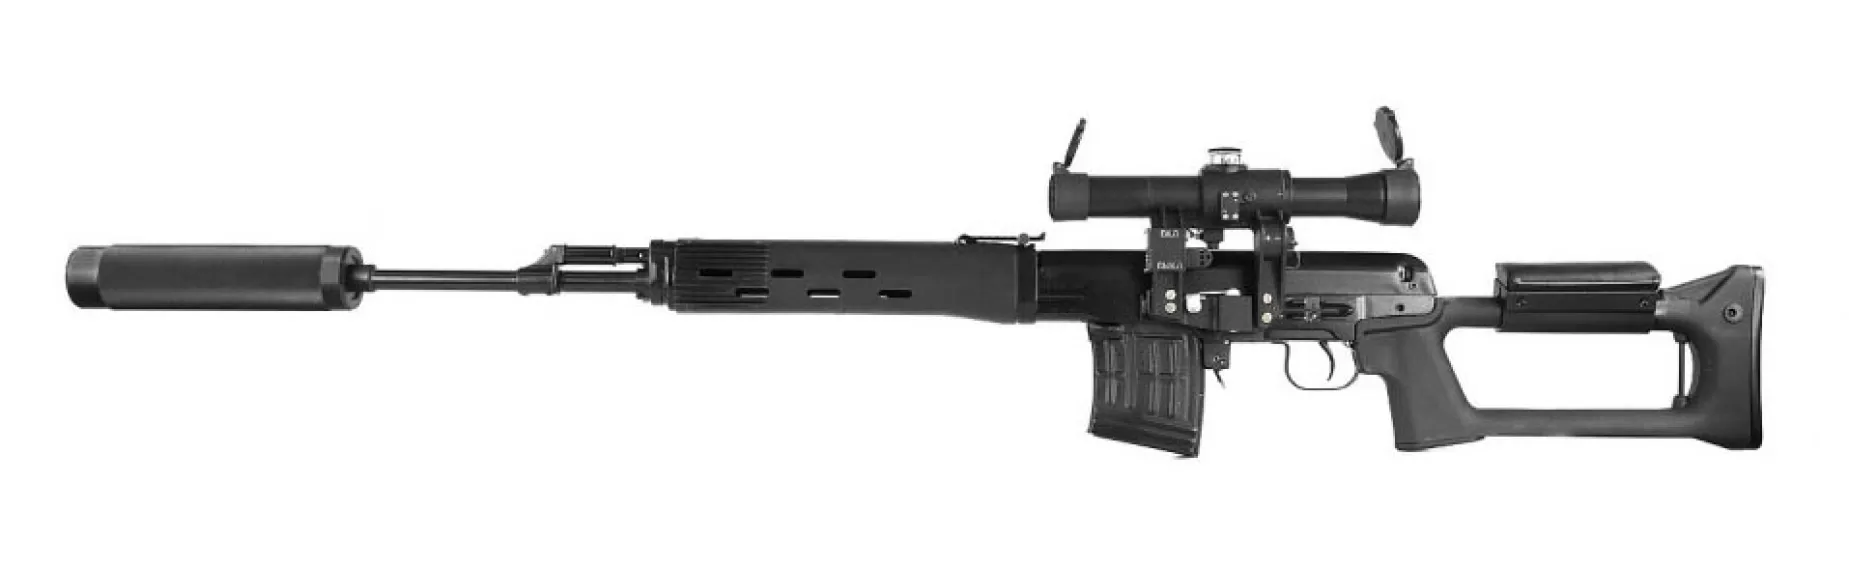 Снайперская винтовка СВД «HUNTER» серии «ORIGINAL» - фото 3